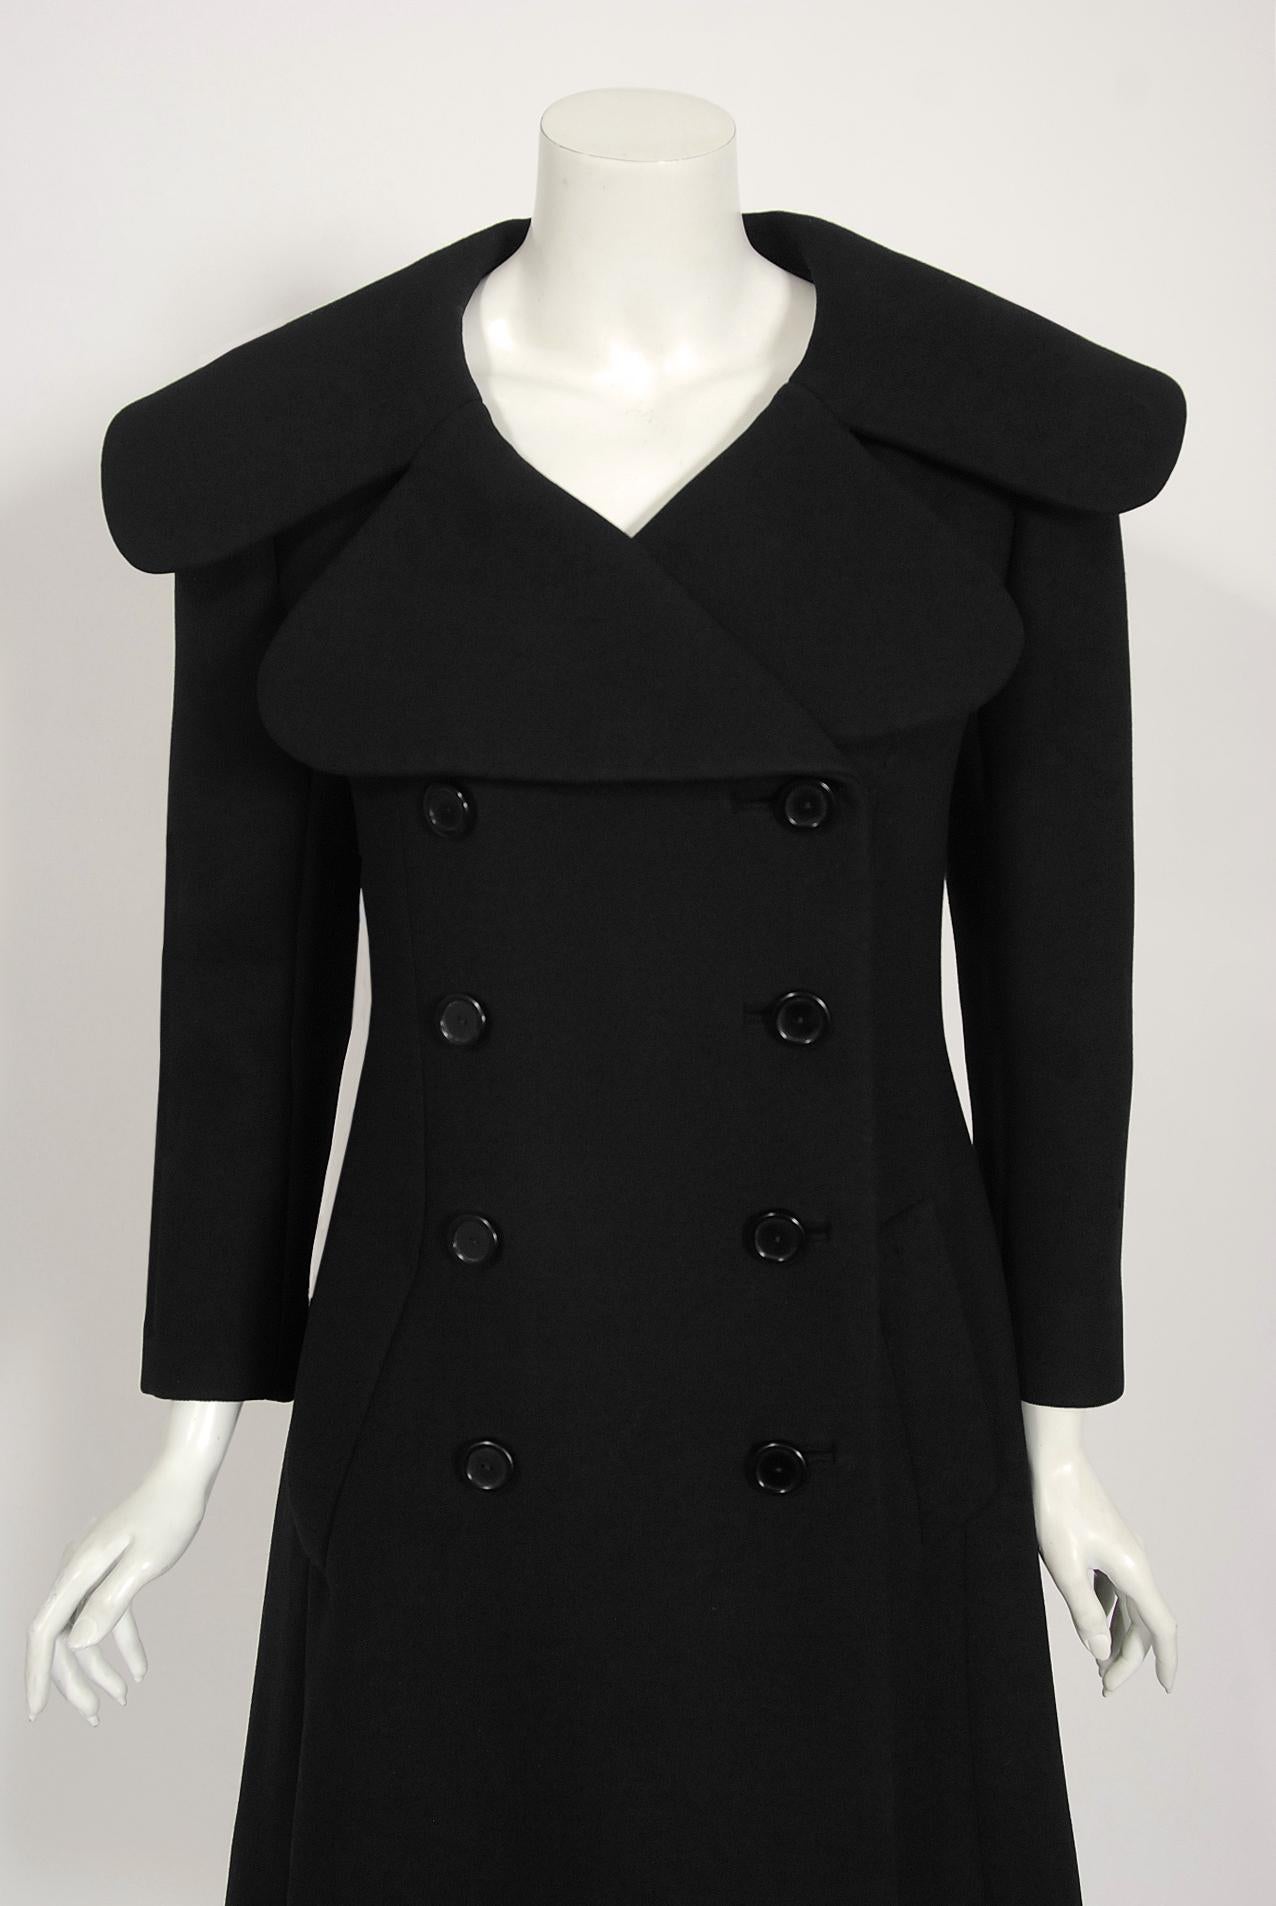 Ce manteau chic de Norman Norell, dans une couleur noire intemporelle, illustre son mélange de qualité couture et de style typiquement américain. Ce magnifique vêtement, qui date de sa collection automne-hiver 1967-68, présente une silhouette a line